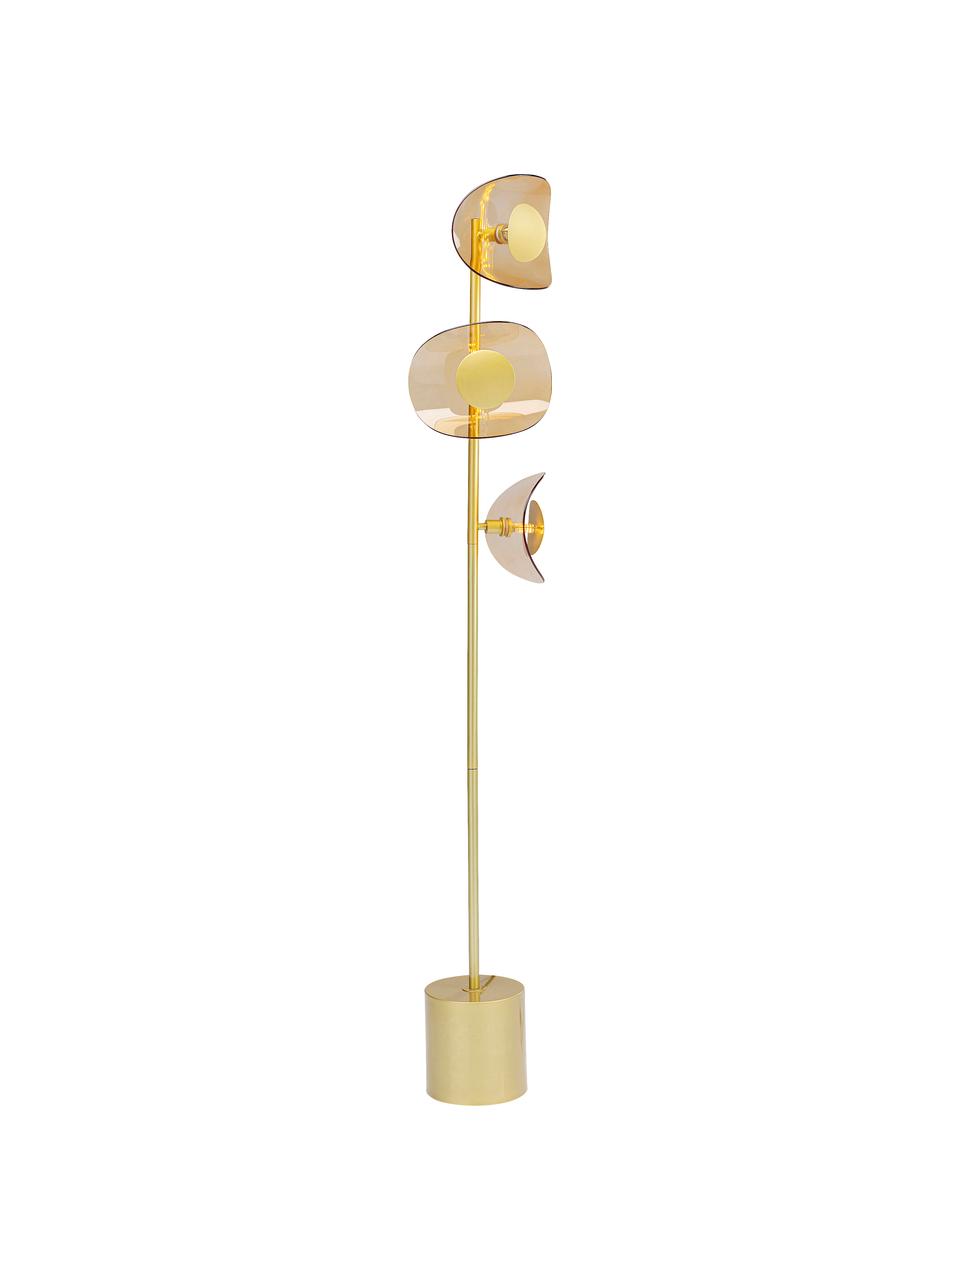 Stehlampe Mariposa aus Glas und Metall, Lampenschirm: Glas, Lampenfuß: Stahl, beschichtet, Goldfarben, Ø 25 x H 160 cm